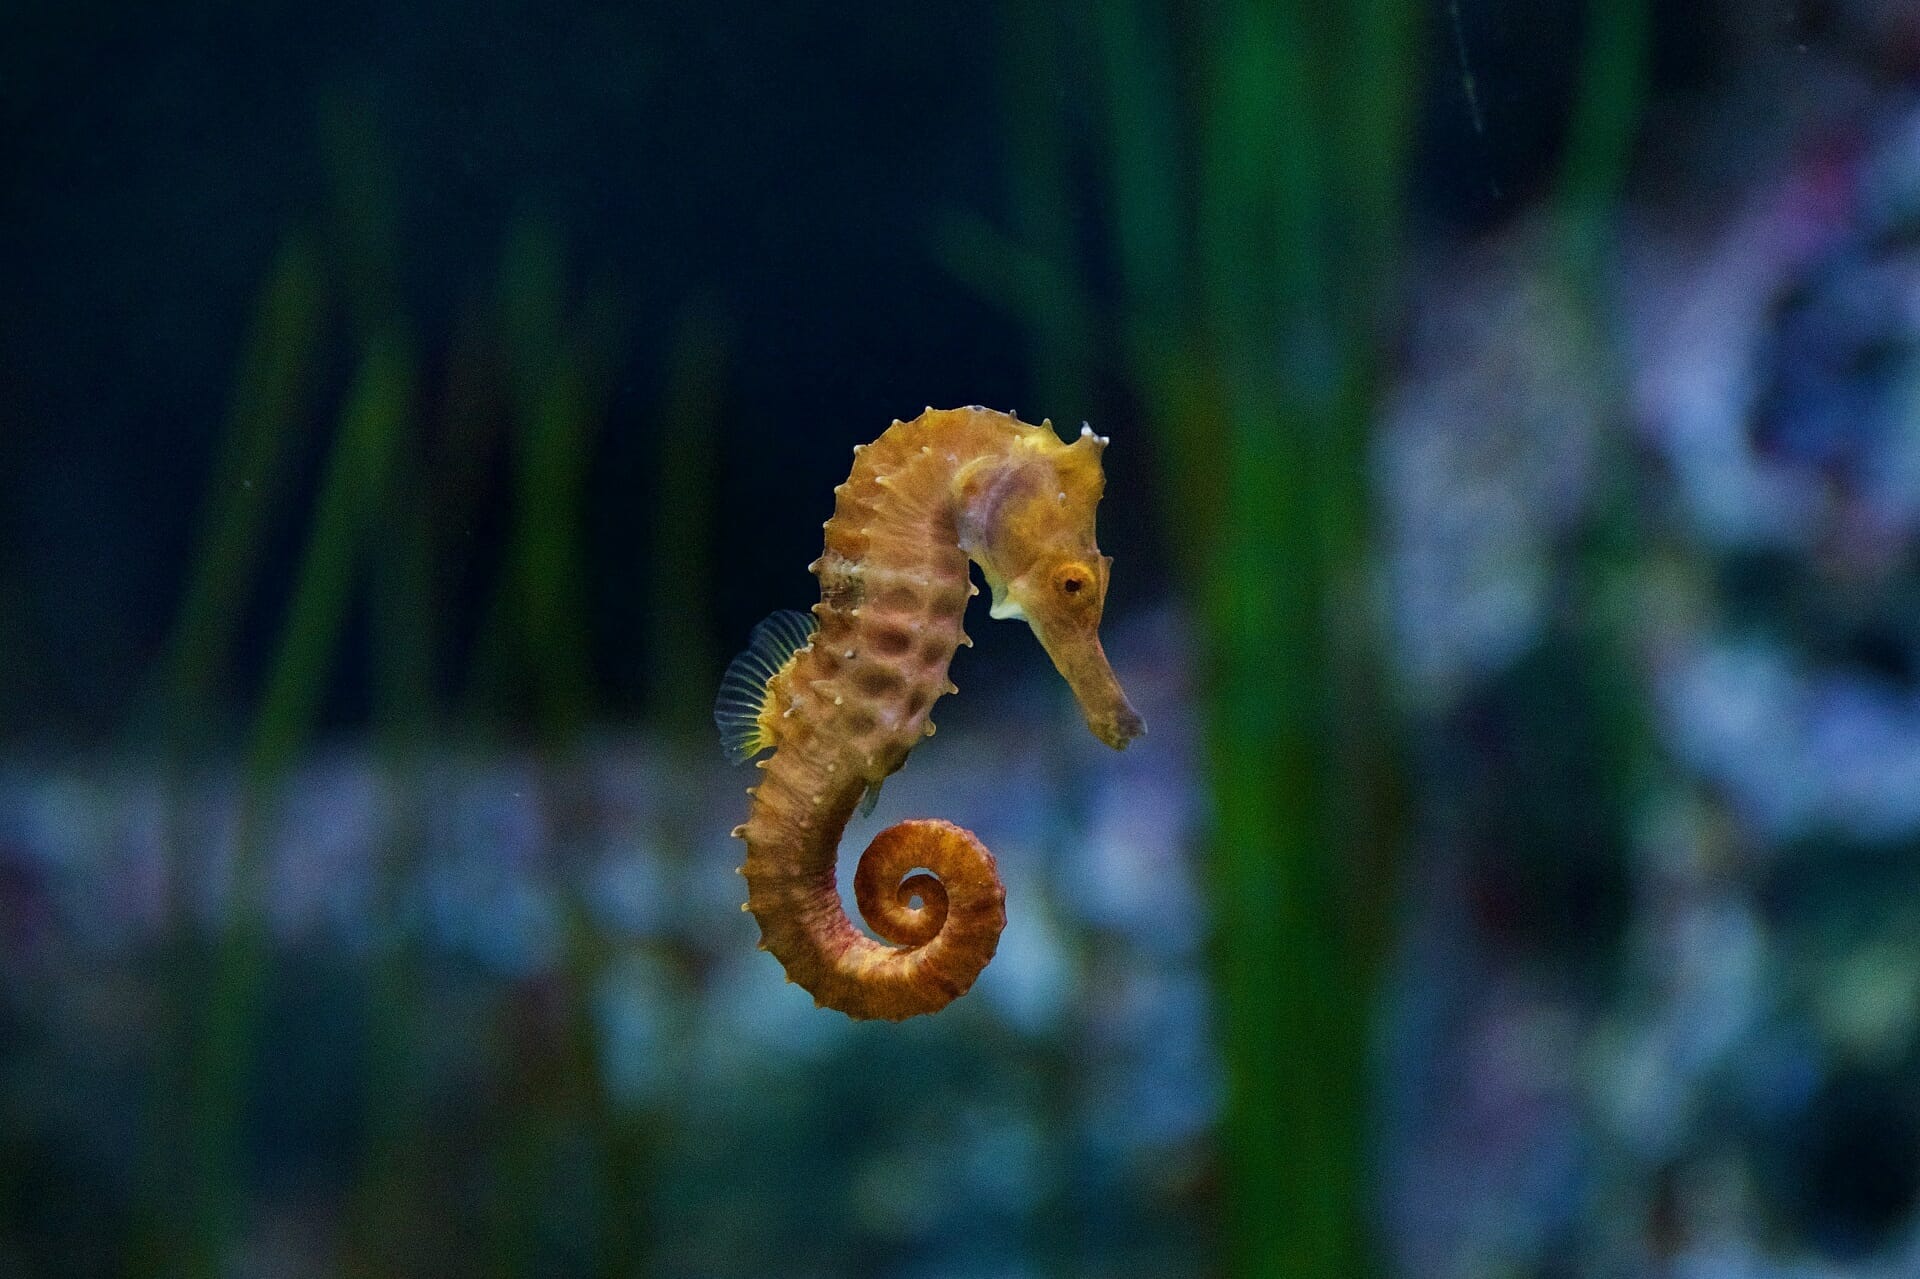 Lotte Aquarium Seahorse